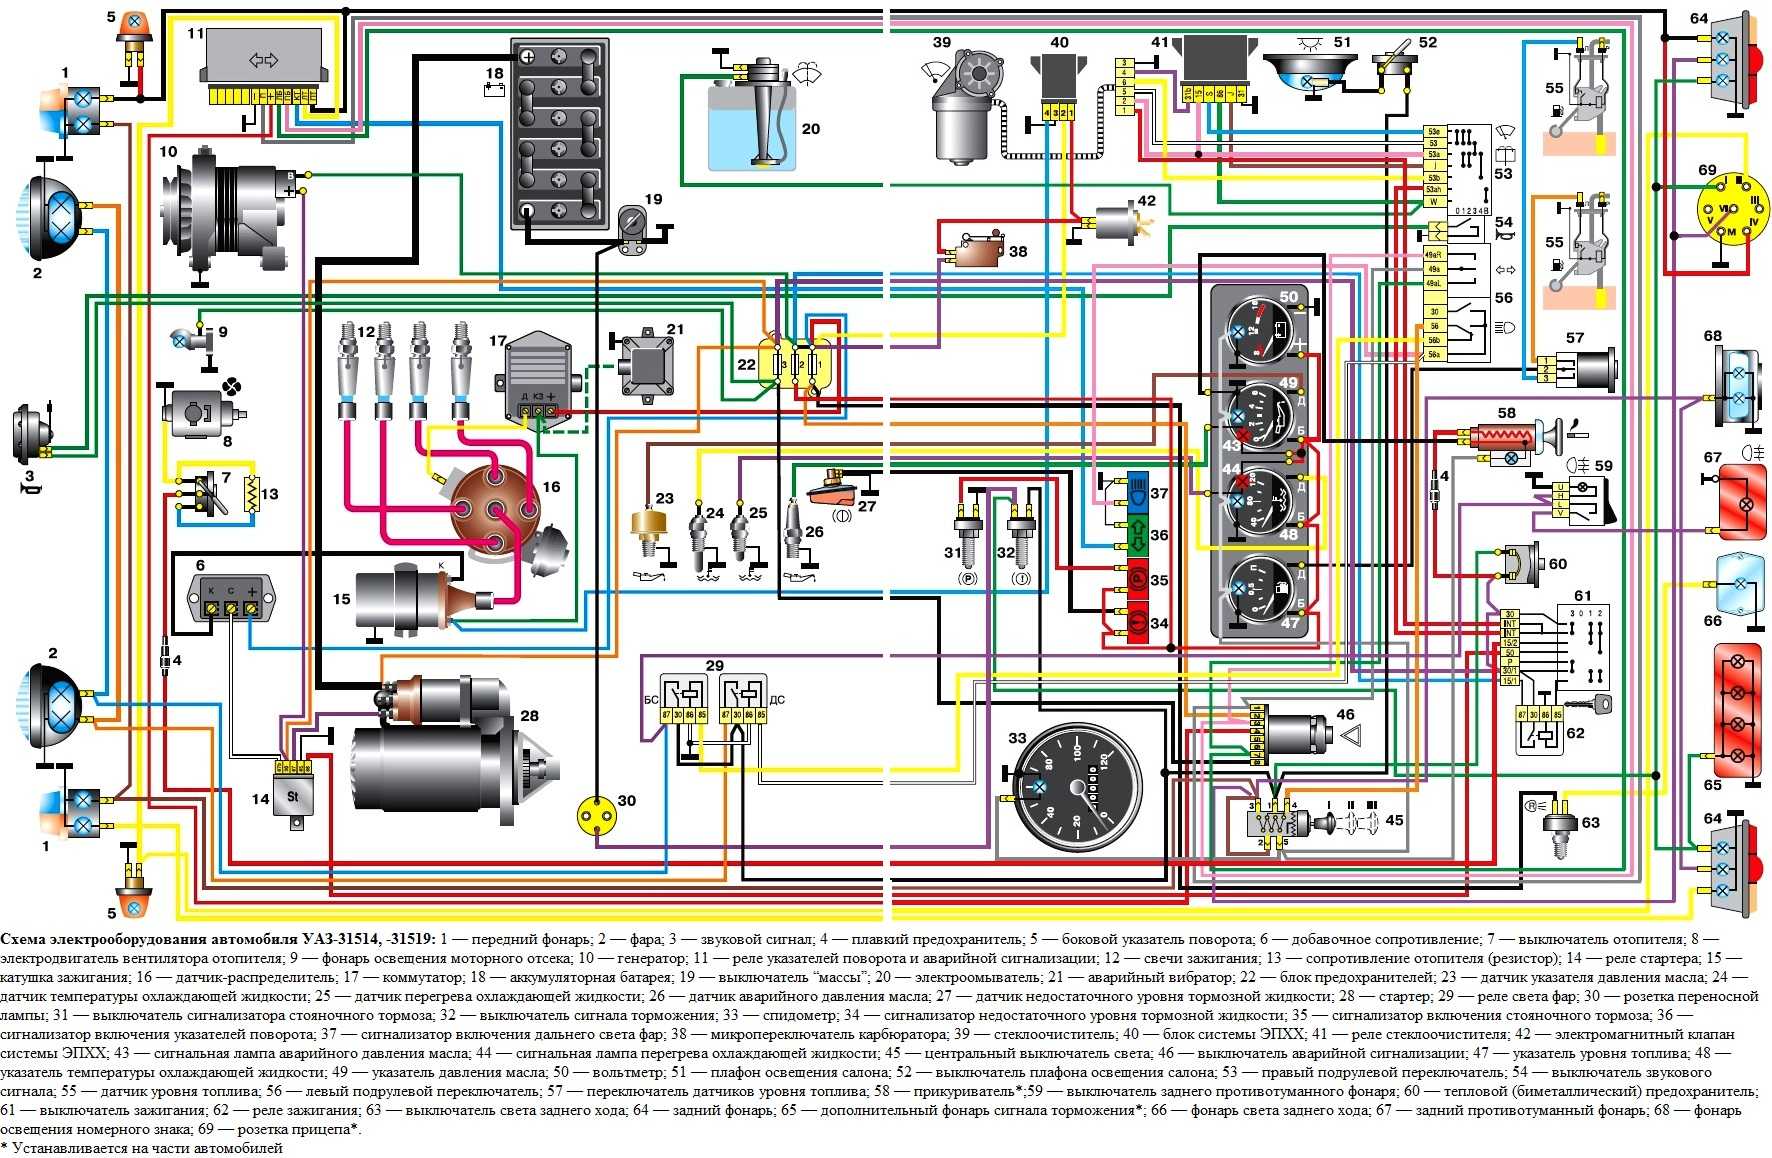 Электросхемы автомобиля уаз буханка с инжектором 409: электропроводка карбюраторного и инжекторного двигателя, общие элементы и различия